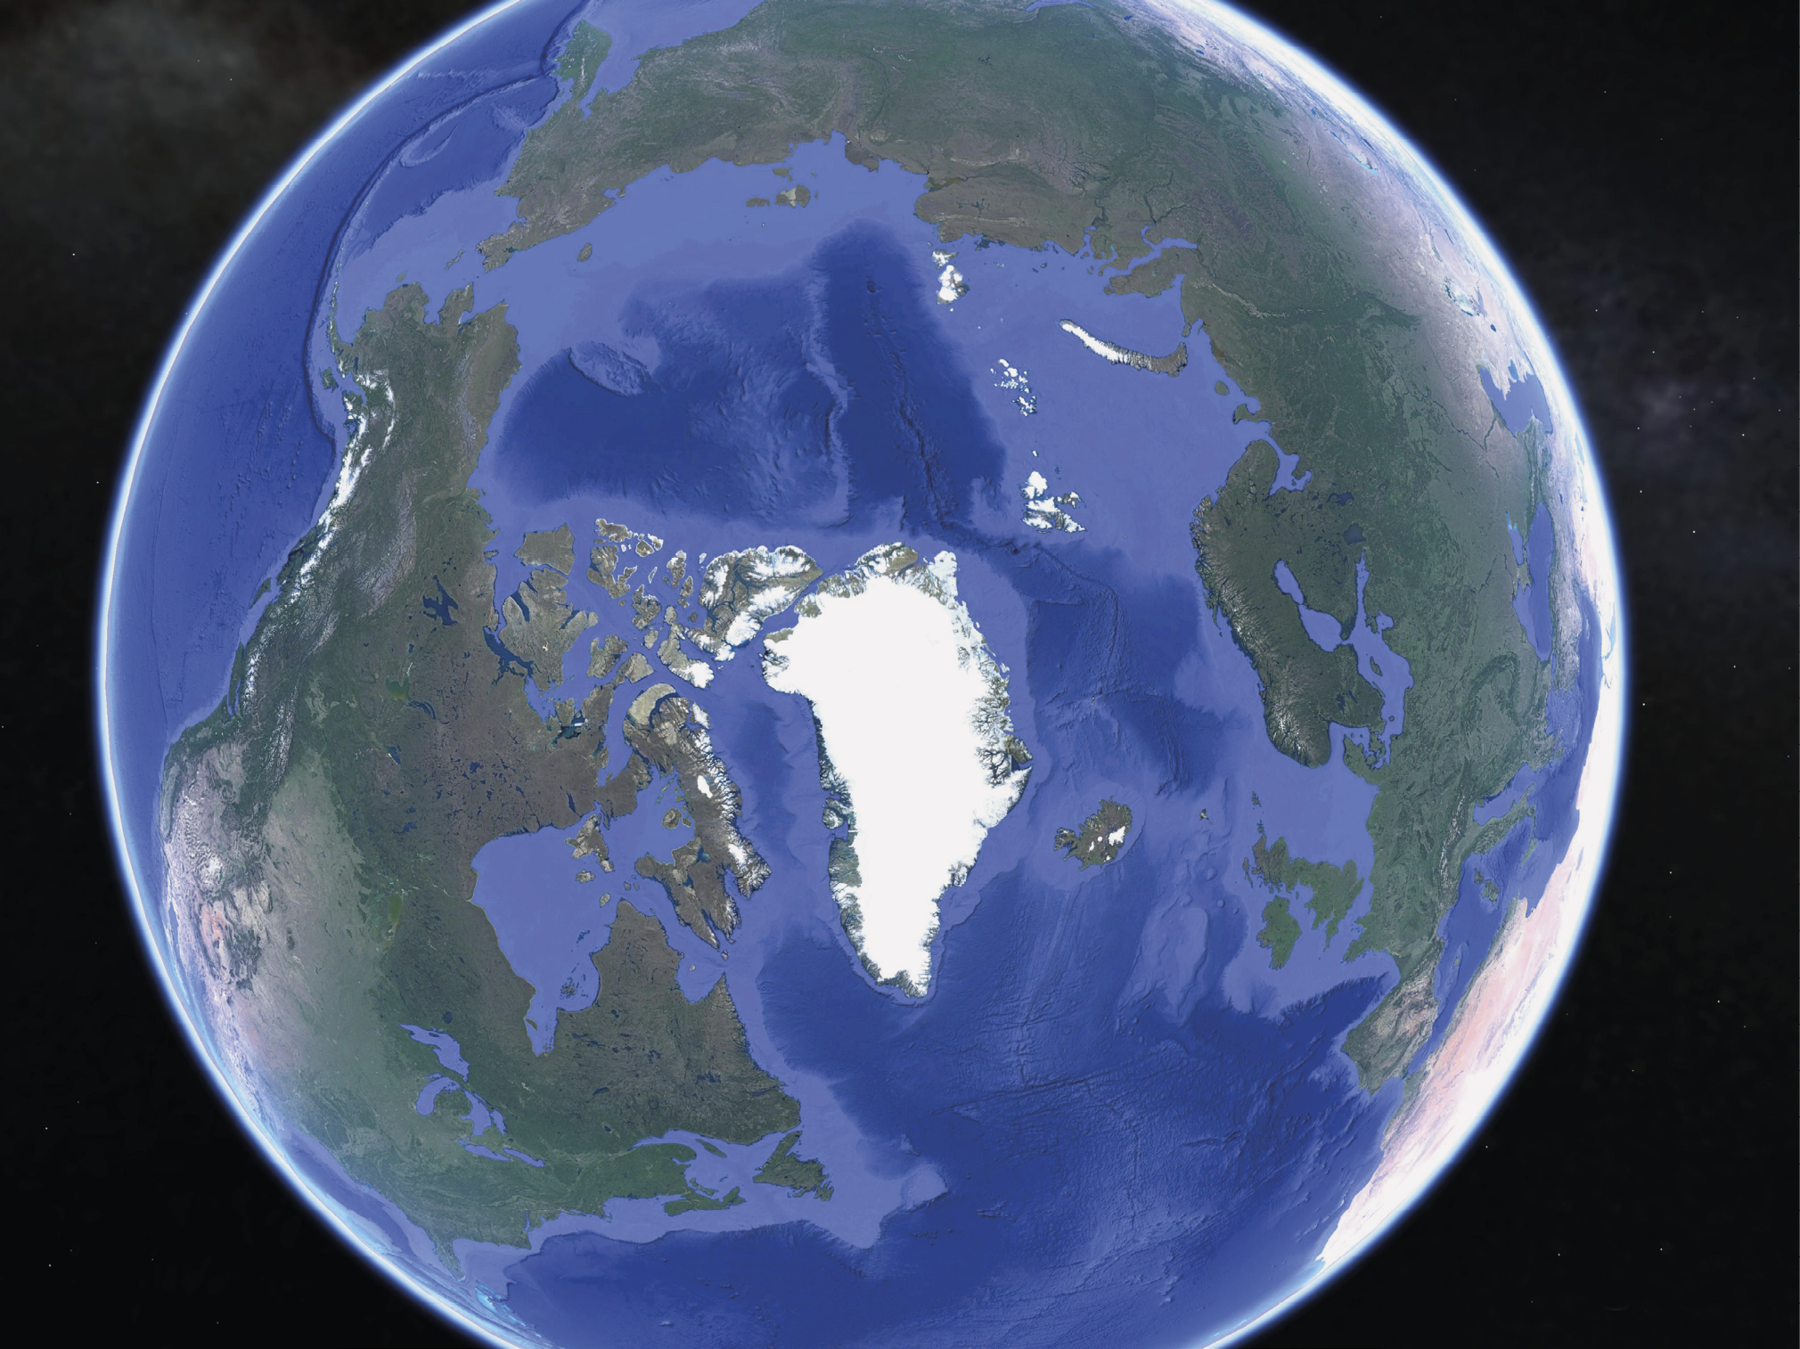 Imagem de satélite. 
Imagem de satélite do planeta terra. No centro da imagem, a região do Ártico coberta de gelo. No entorno, partes azuis representando as águas oceânicas e os continentes eurasiano à direita e americano à esquerda.